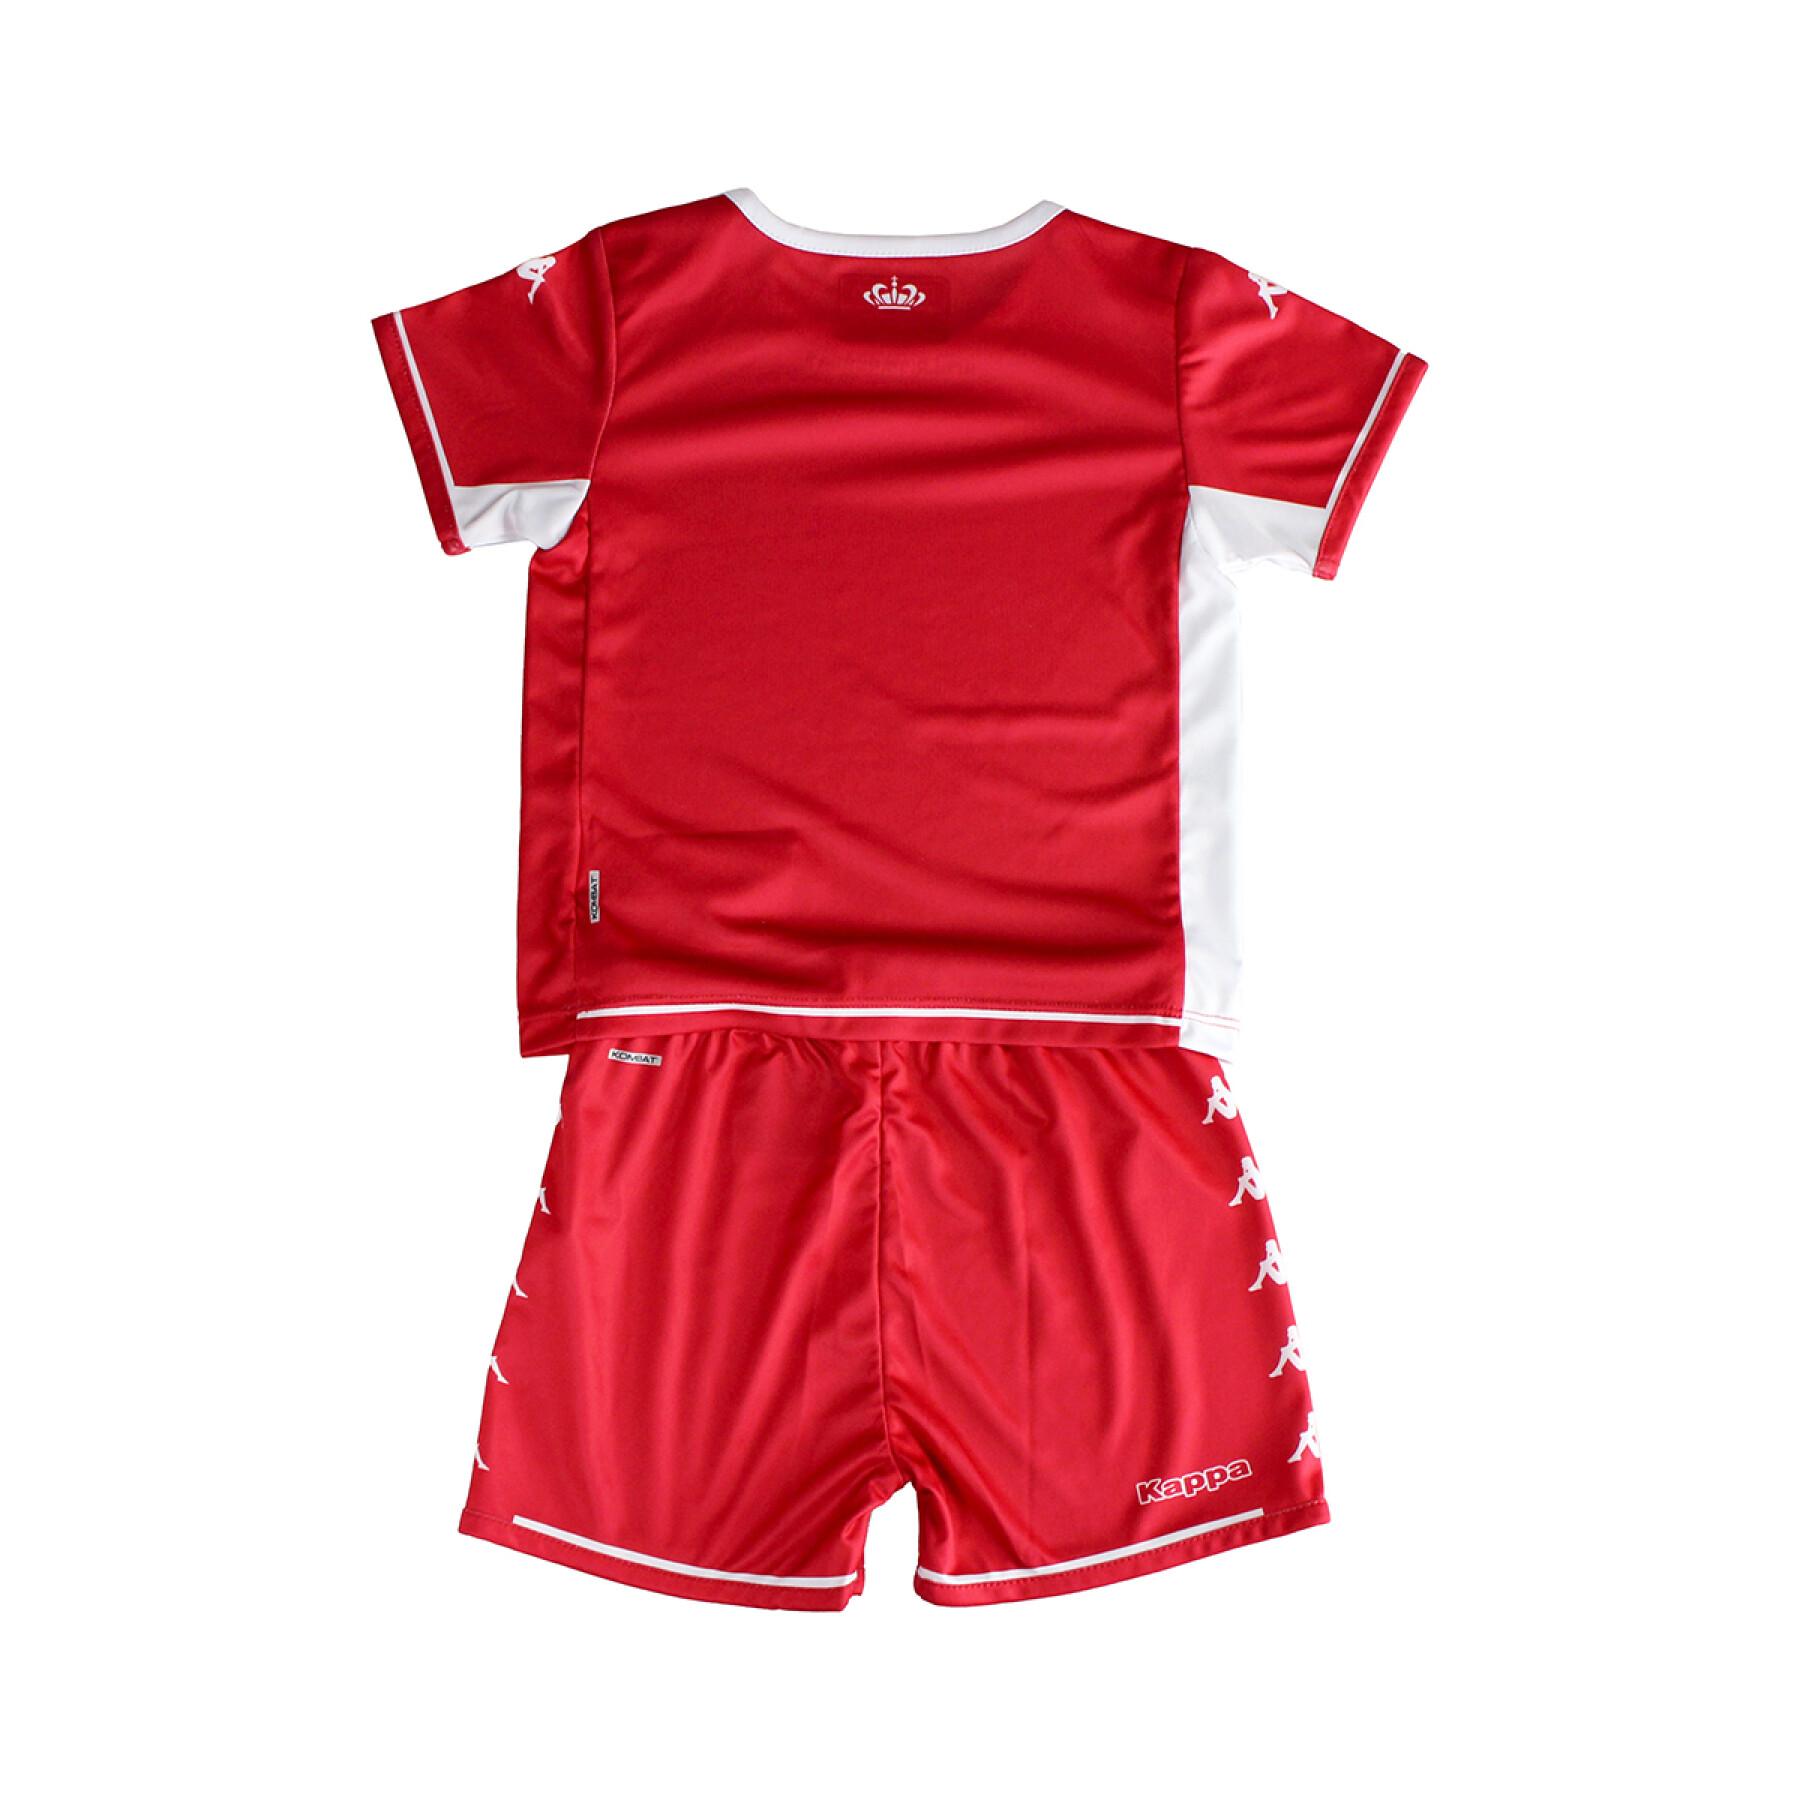 Kit doméstico para bebés AS Monaco 2021/22